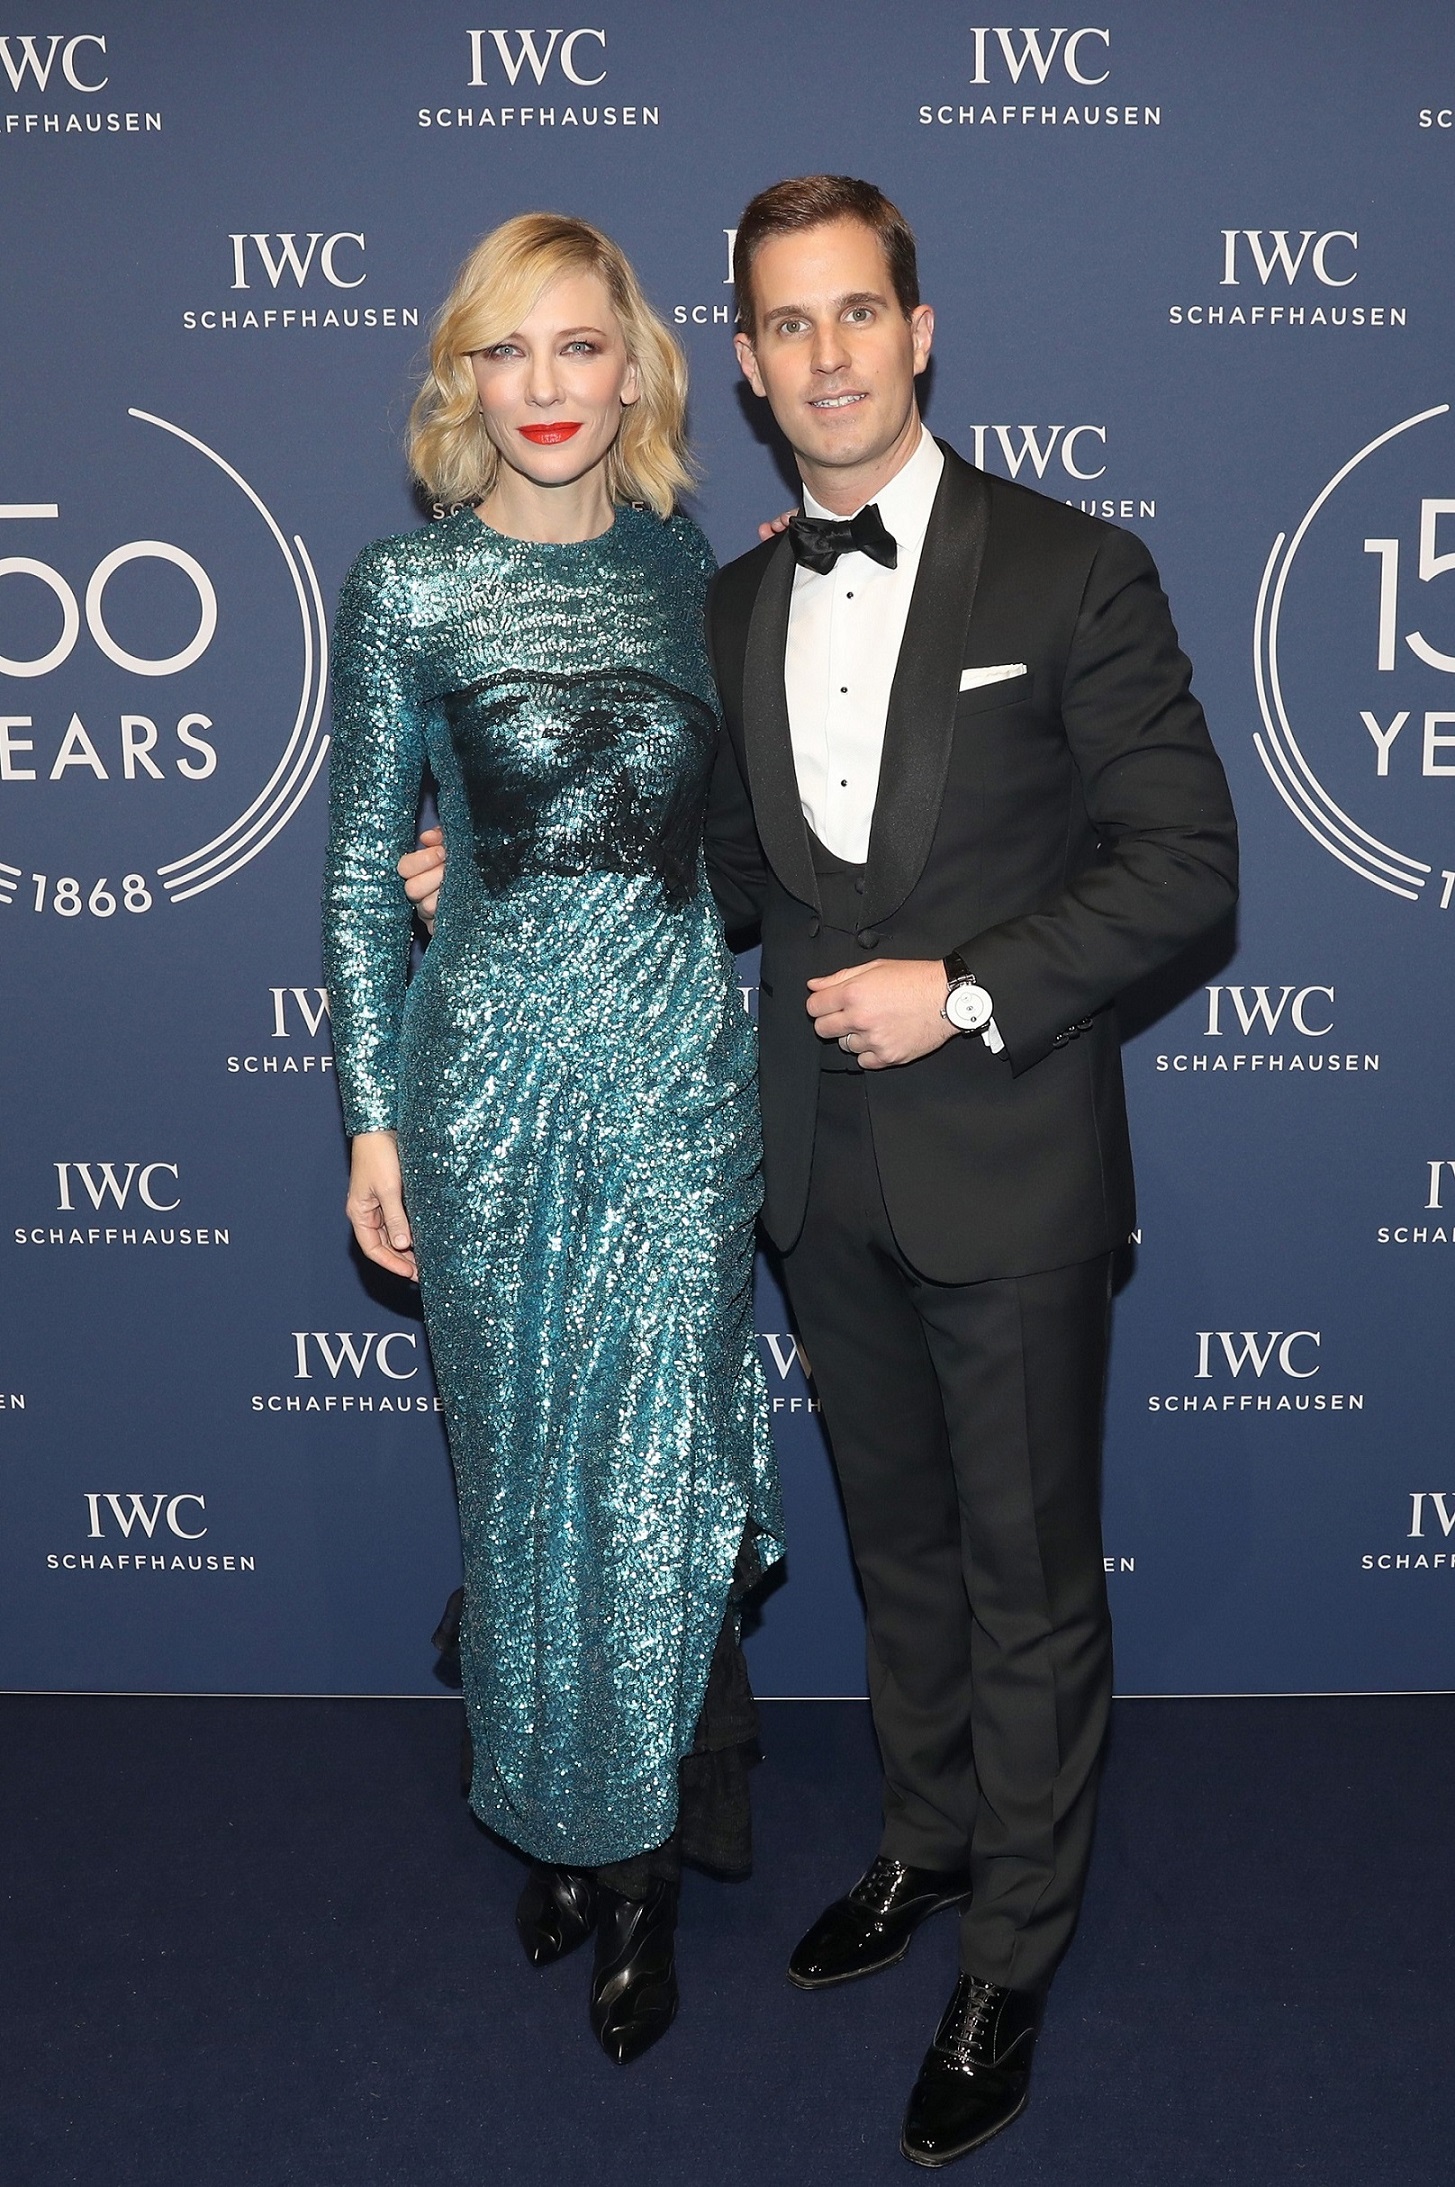 Cate Blanchett and IWC Schaffhausen CEO Christoph Grainger Herr 